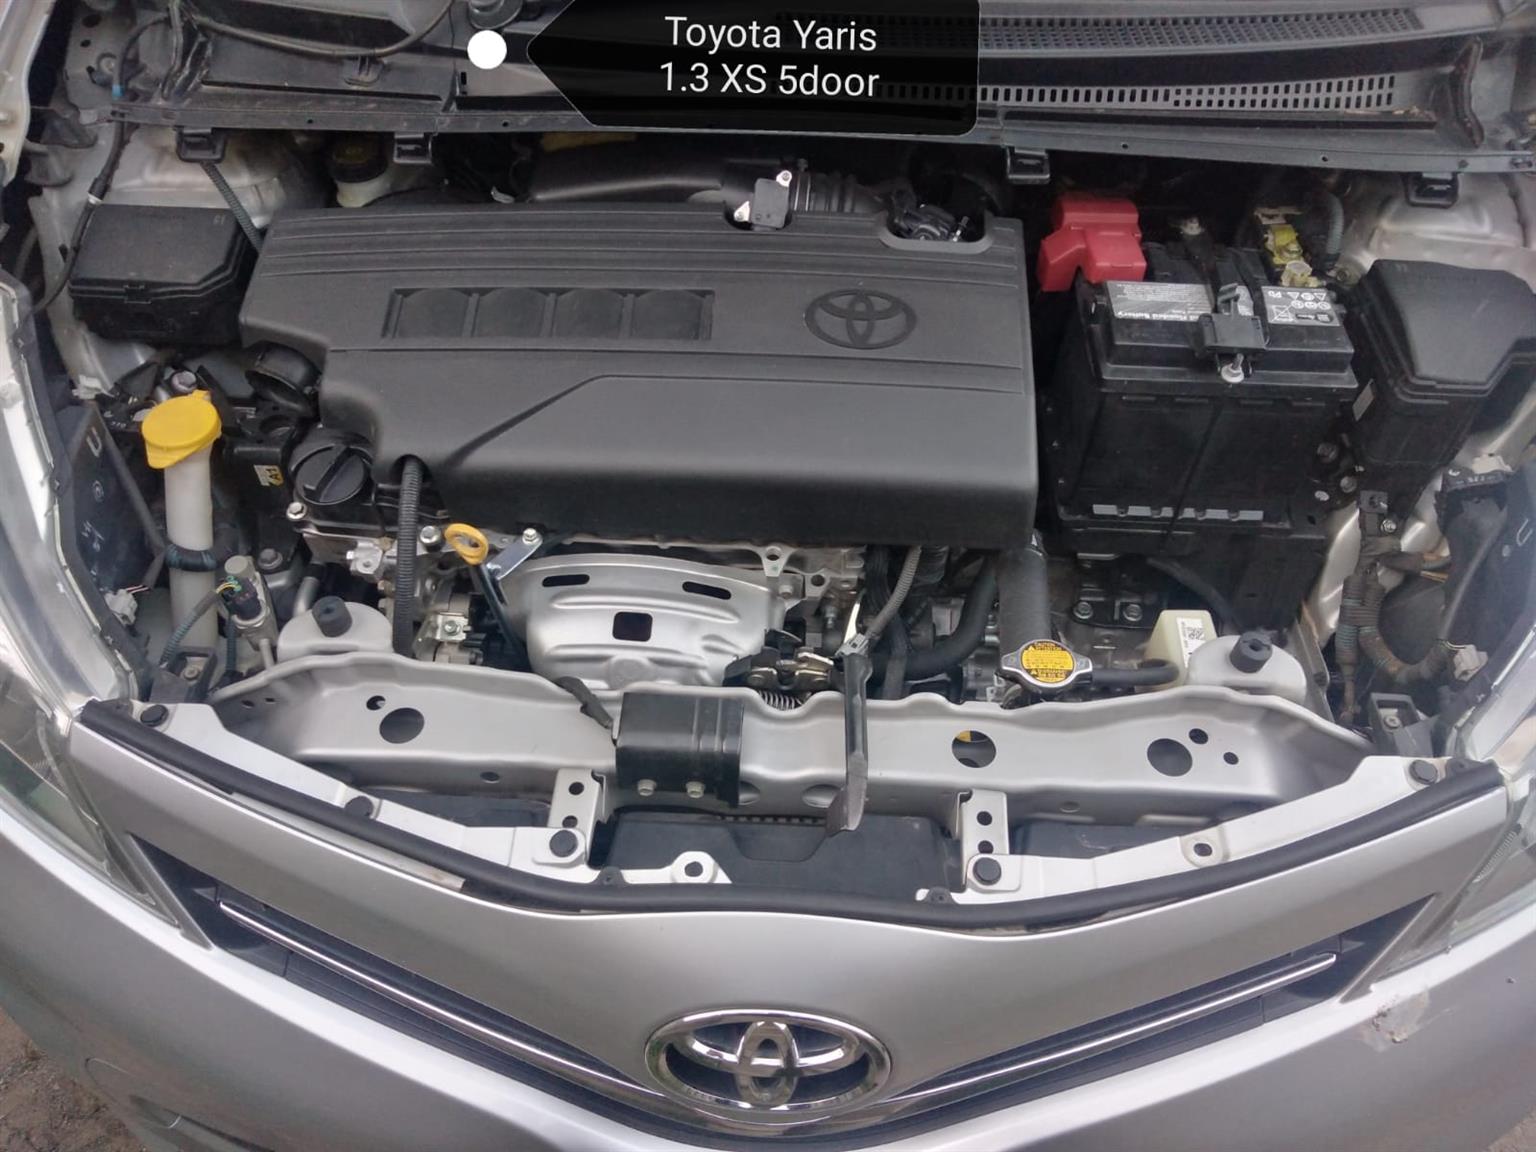 2012 Toyota Yaris 1.3 Xs 5door for sale